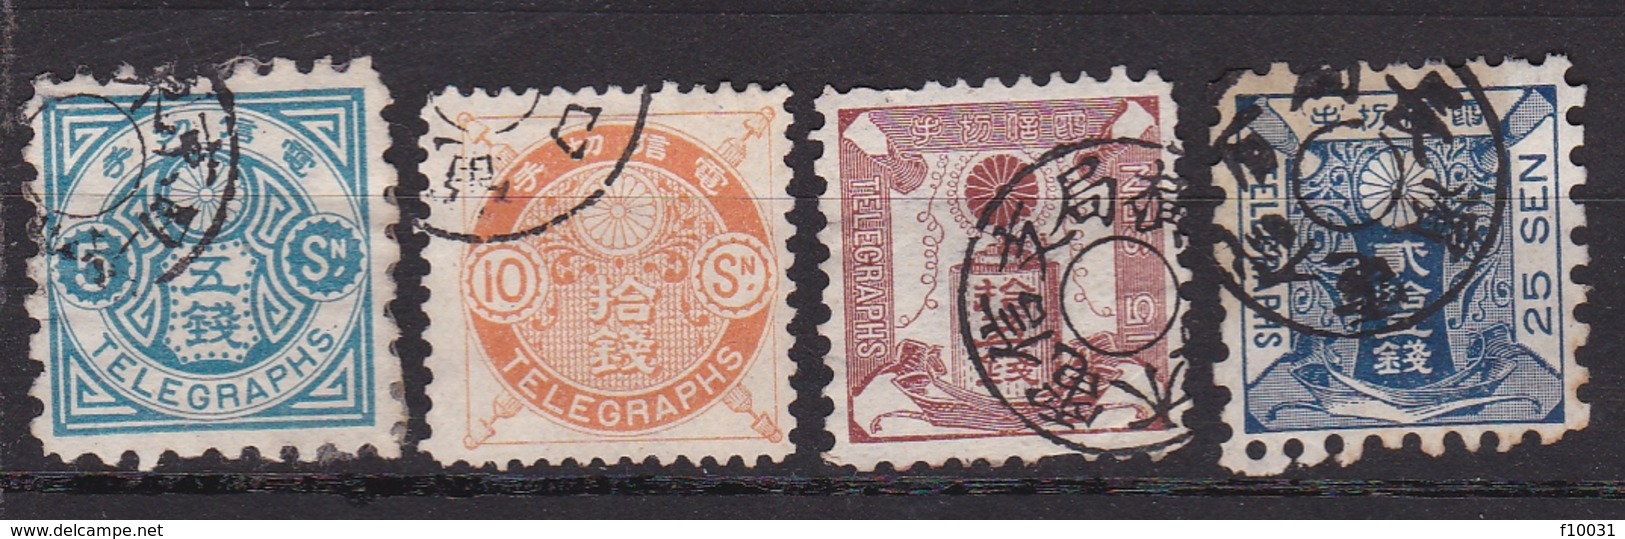 Japon Timbre Télégraphe N° 5-6-7-8 ° - Telegraafzegels